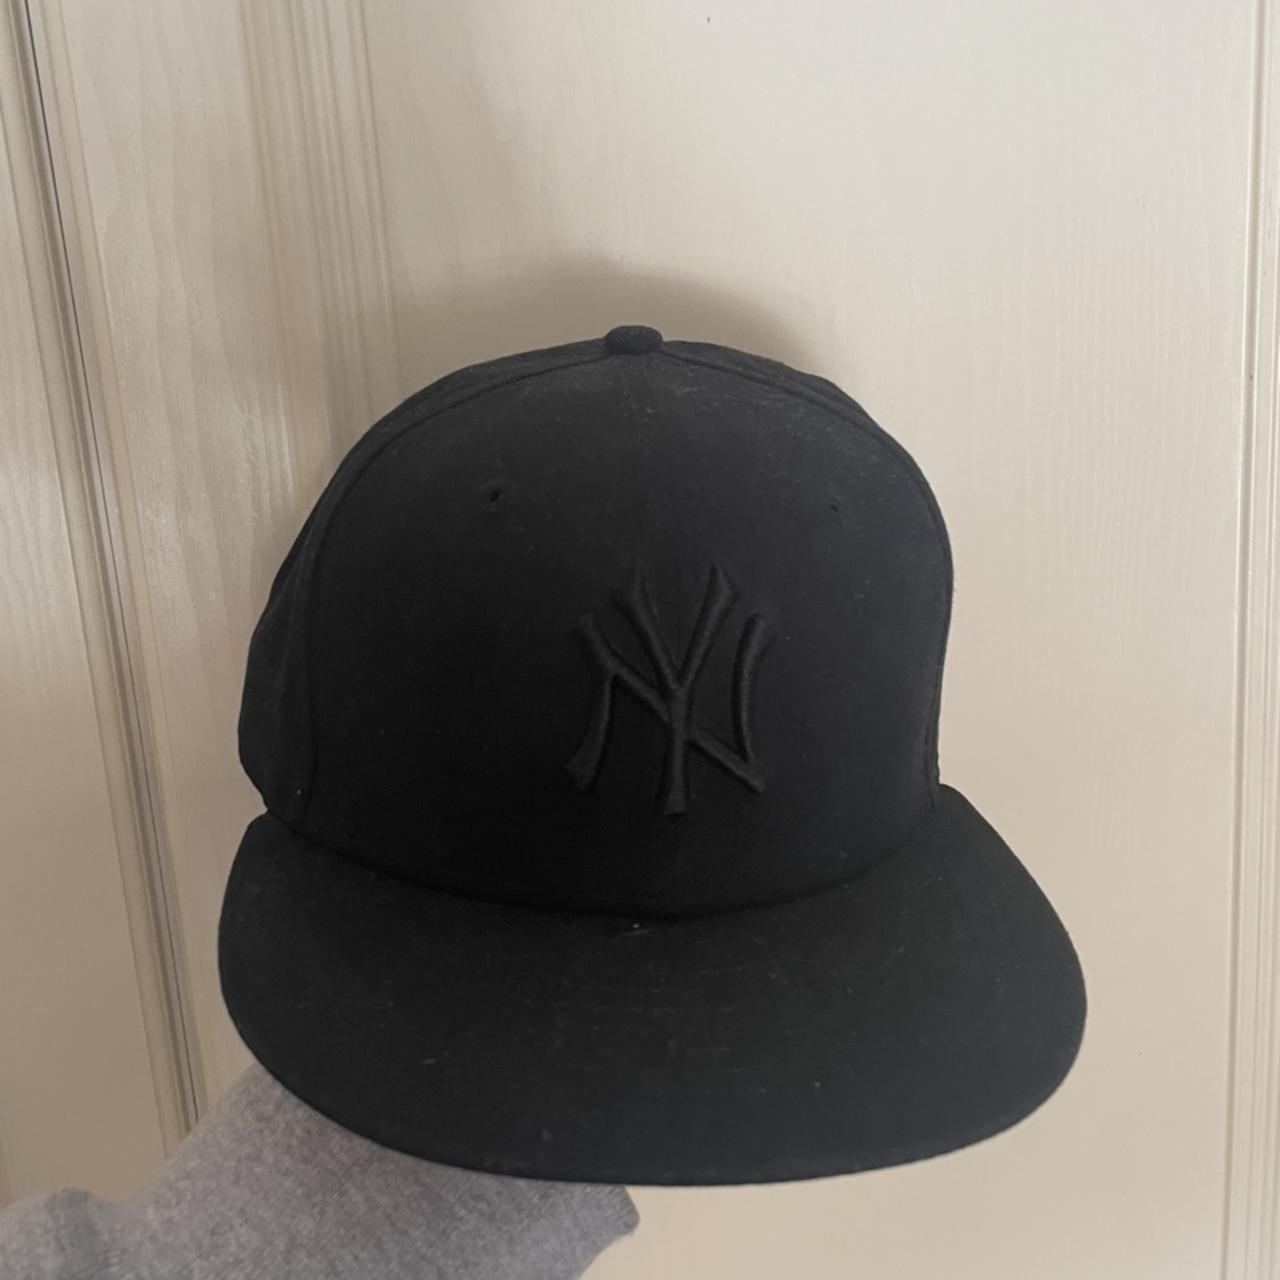 klap schrobben Revolutionair New era New York yankees Hat. Black with leopard... - Depop